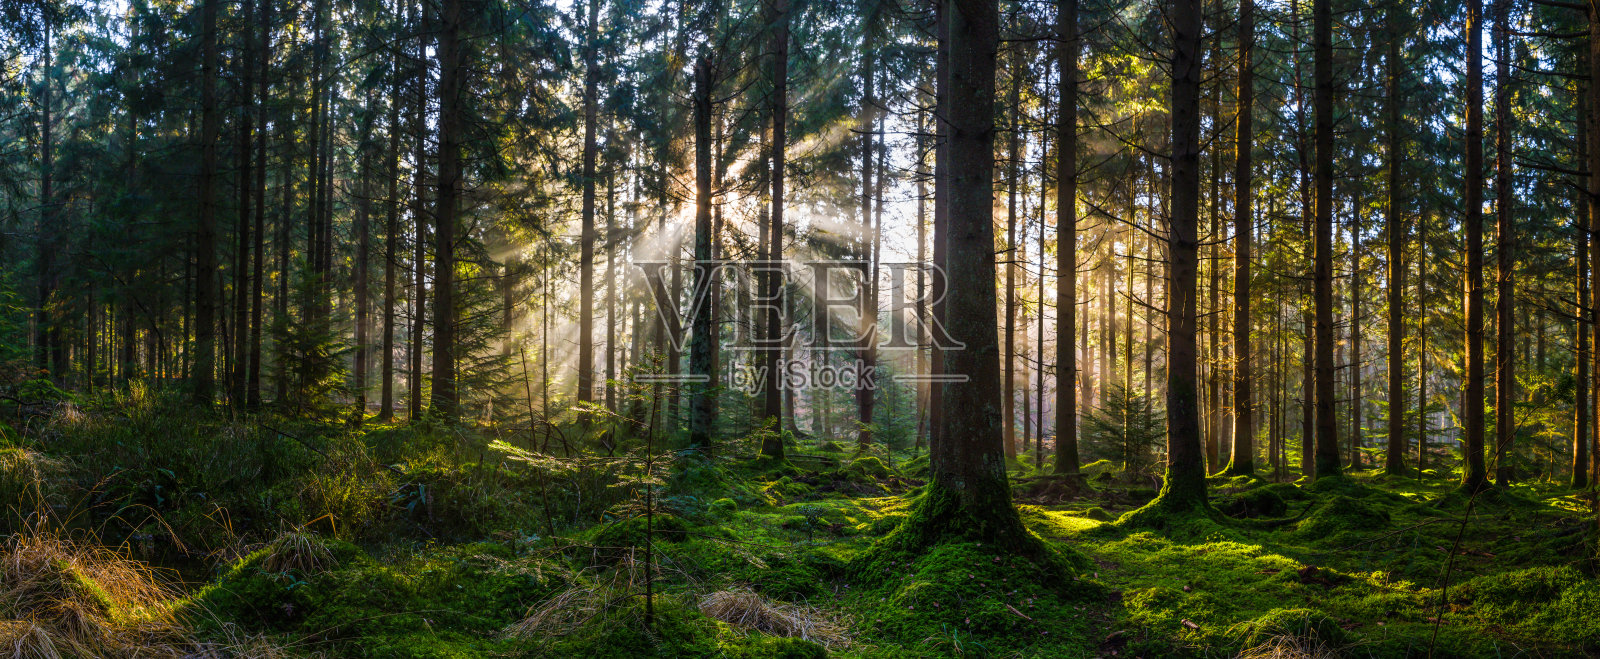 黎明的树林光线照亮了田园诗般的绿色森林全景照片摄影图片